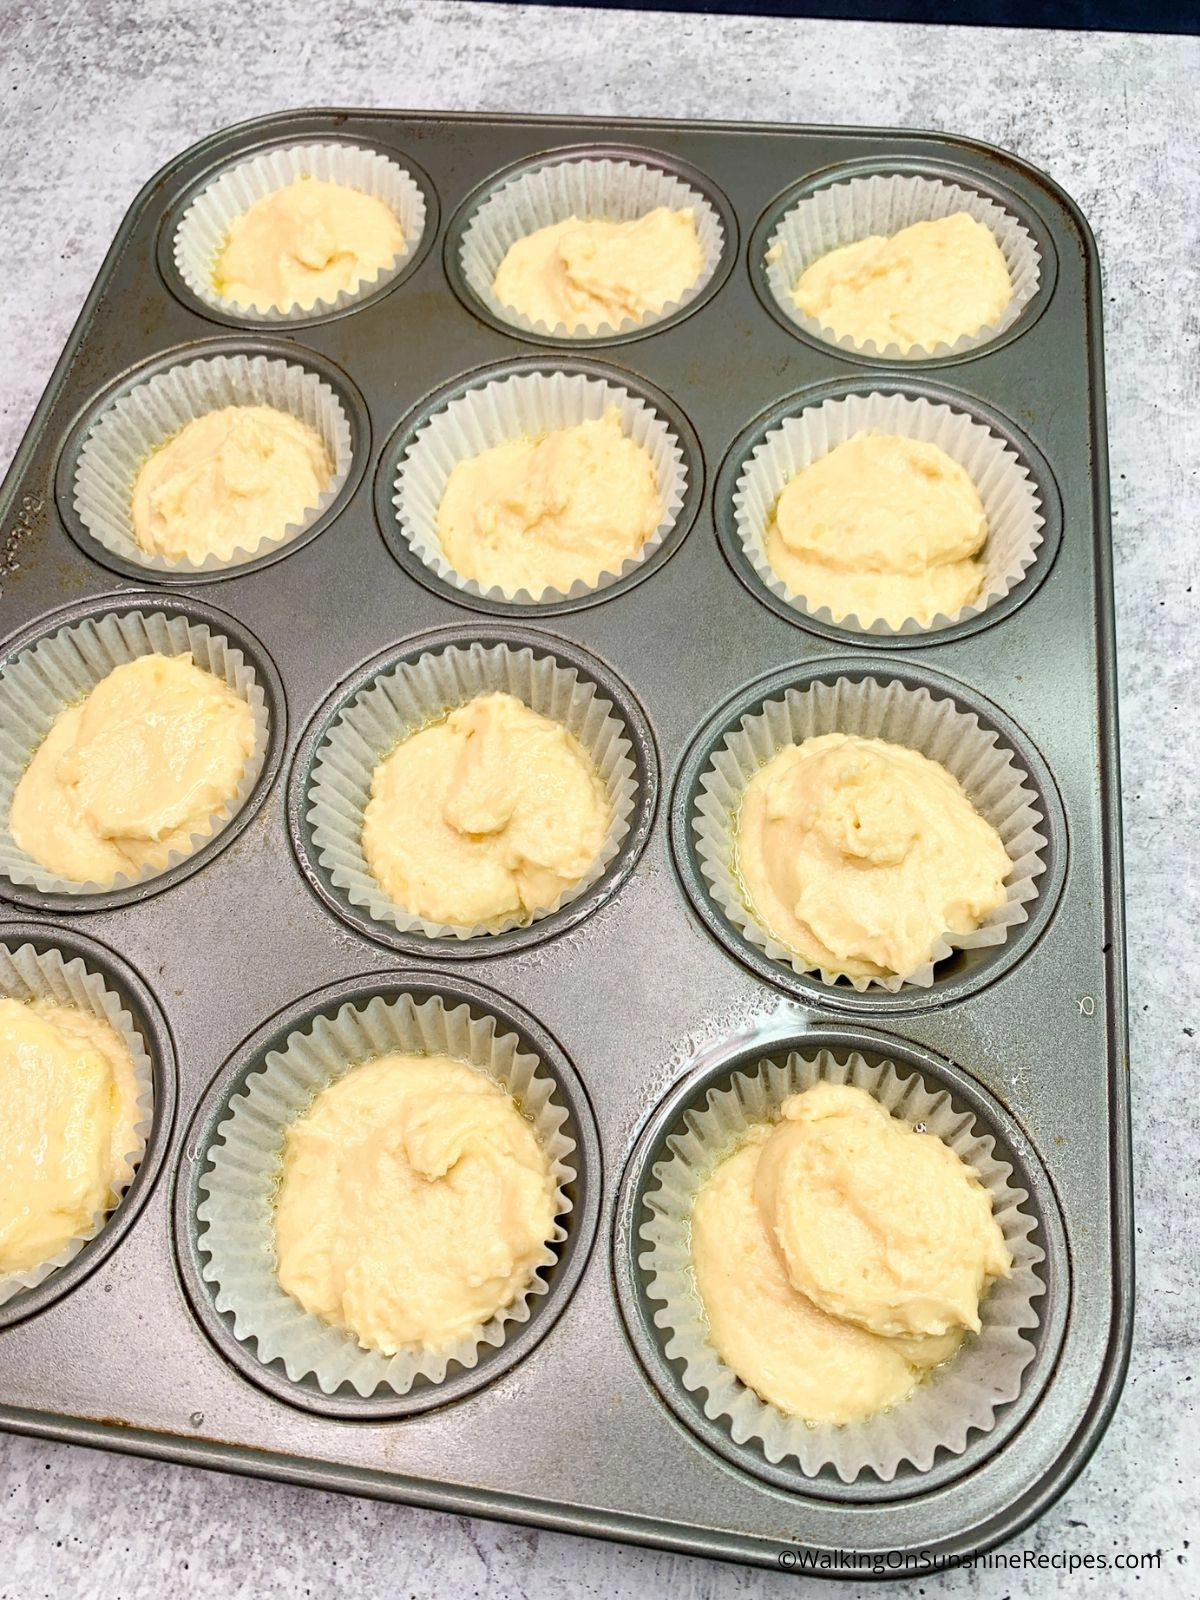 Basic Muffins Recipe in Pan before Baking.